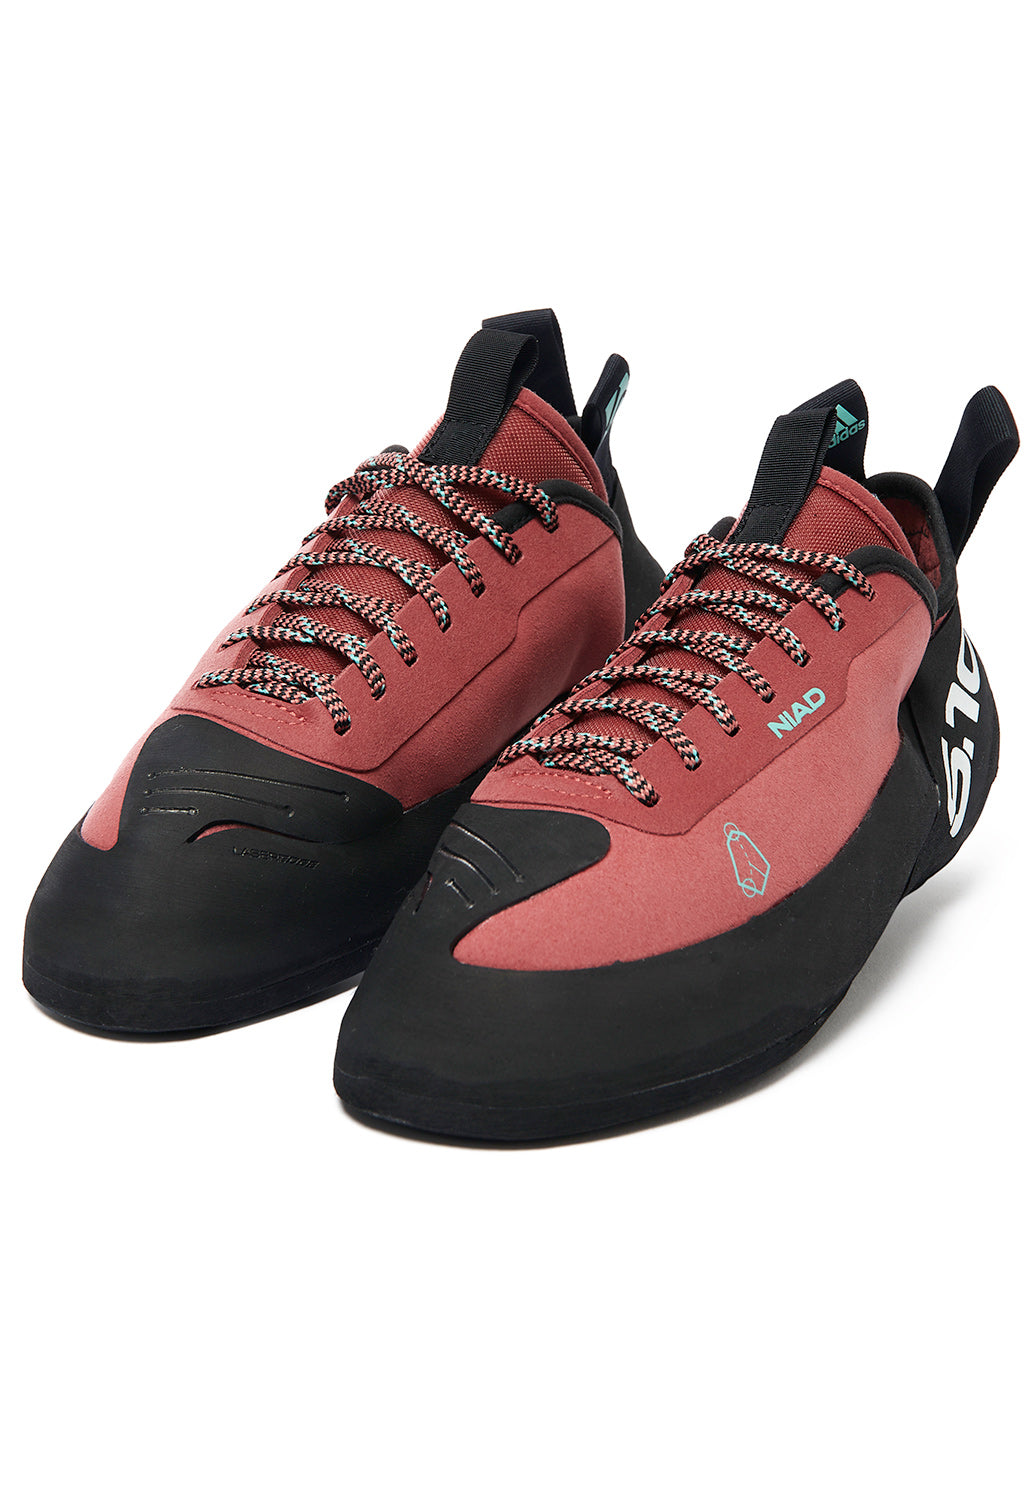 adidas Five Ten NIAD Lace Men's Shoes - Core Black/Crew Red/Acid Mint